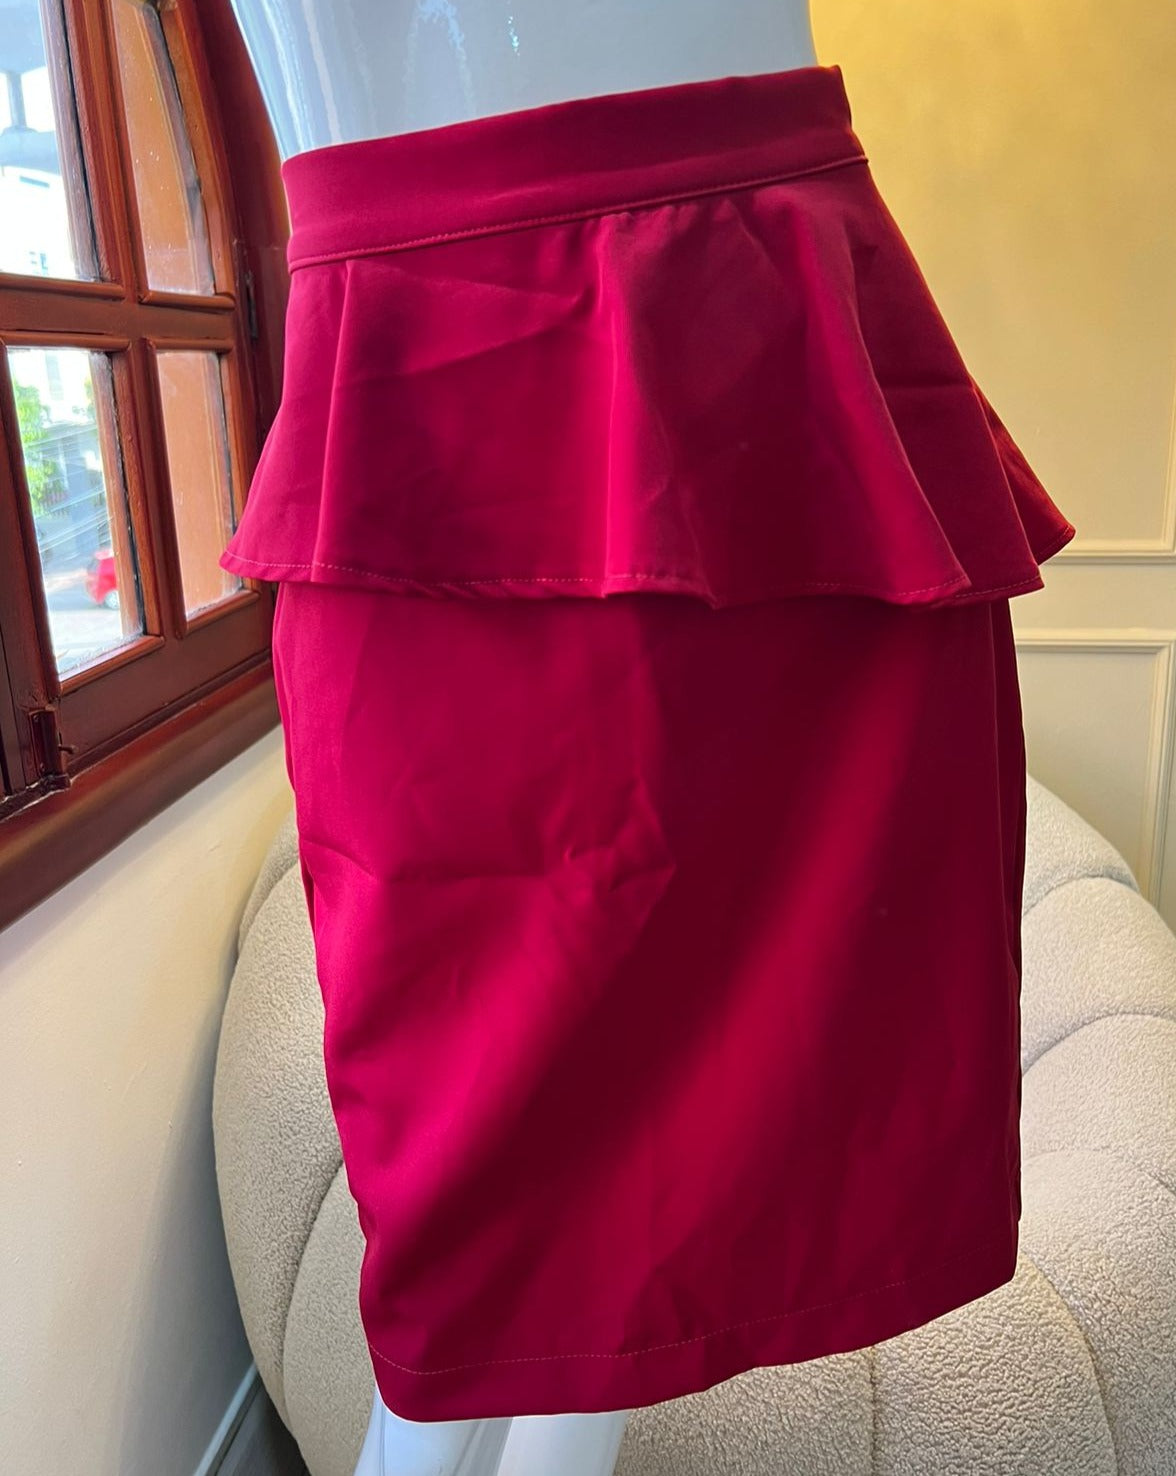 Falda roja con volante peplum, ideal para eventos y looks sofisticados. Diseño elegante y moderno de KIKE RODRIGUEZ.